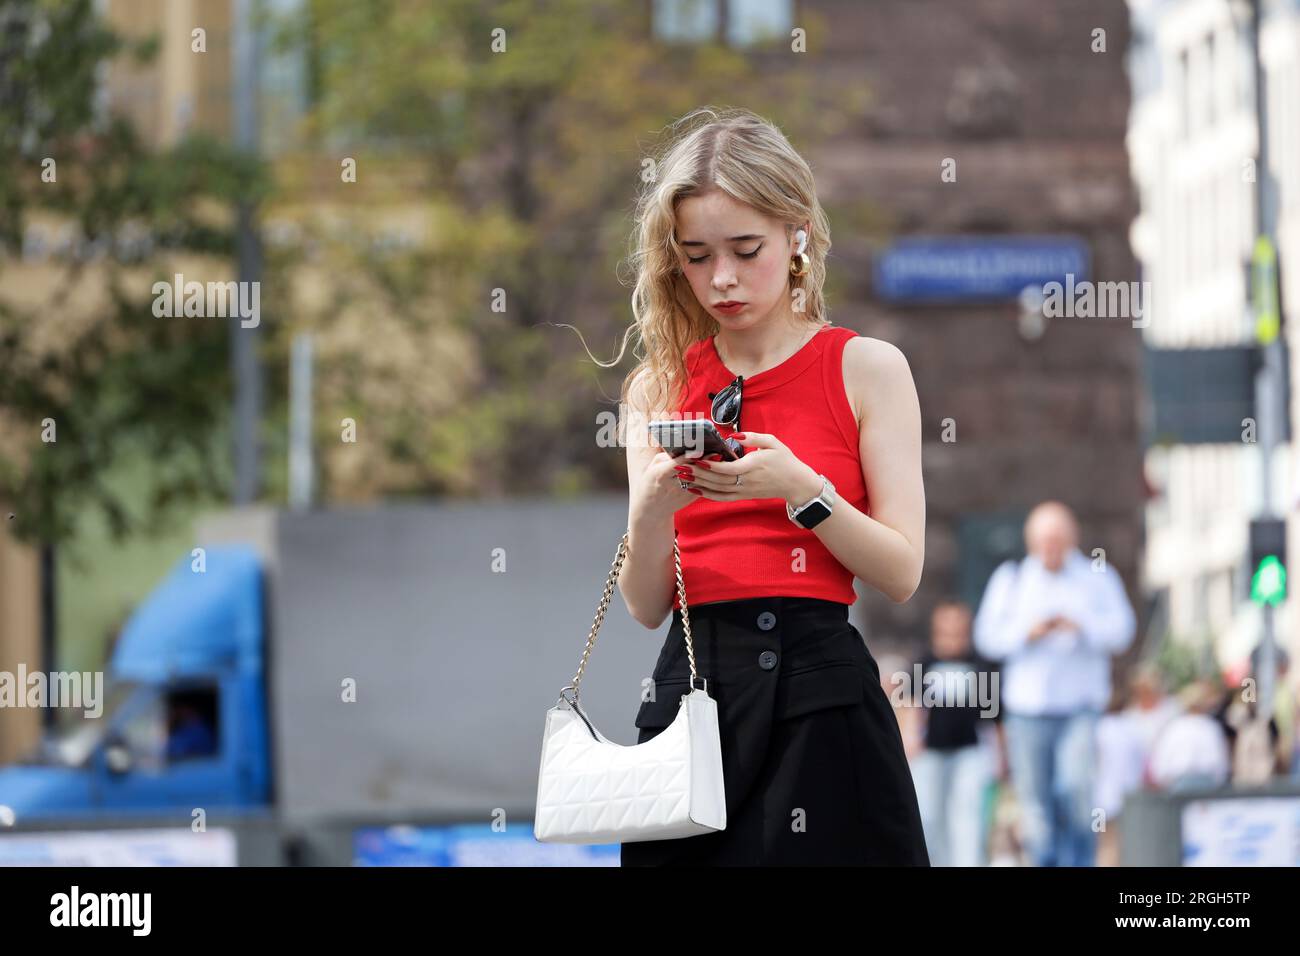 Ragazza attraente con capelli ricci biondi in piedi con lo smartphone in mano in strada, che usa il telefono cellulare nelle città estive Foto Stock